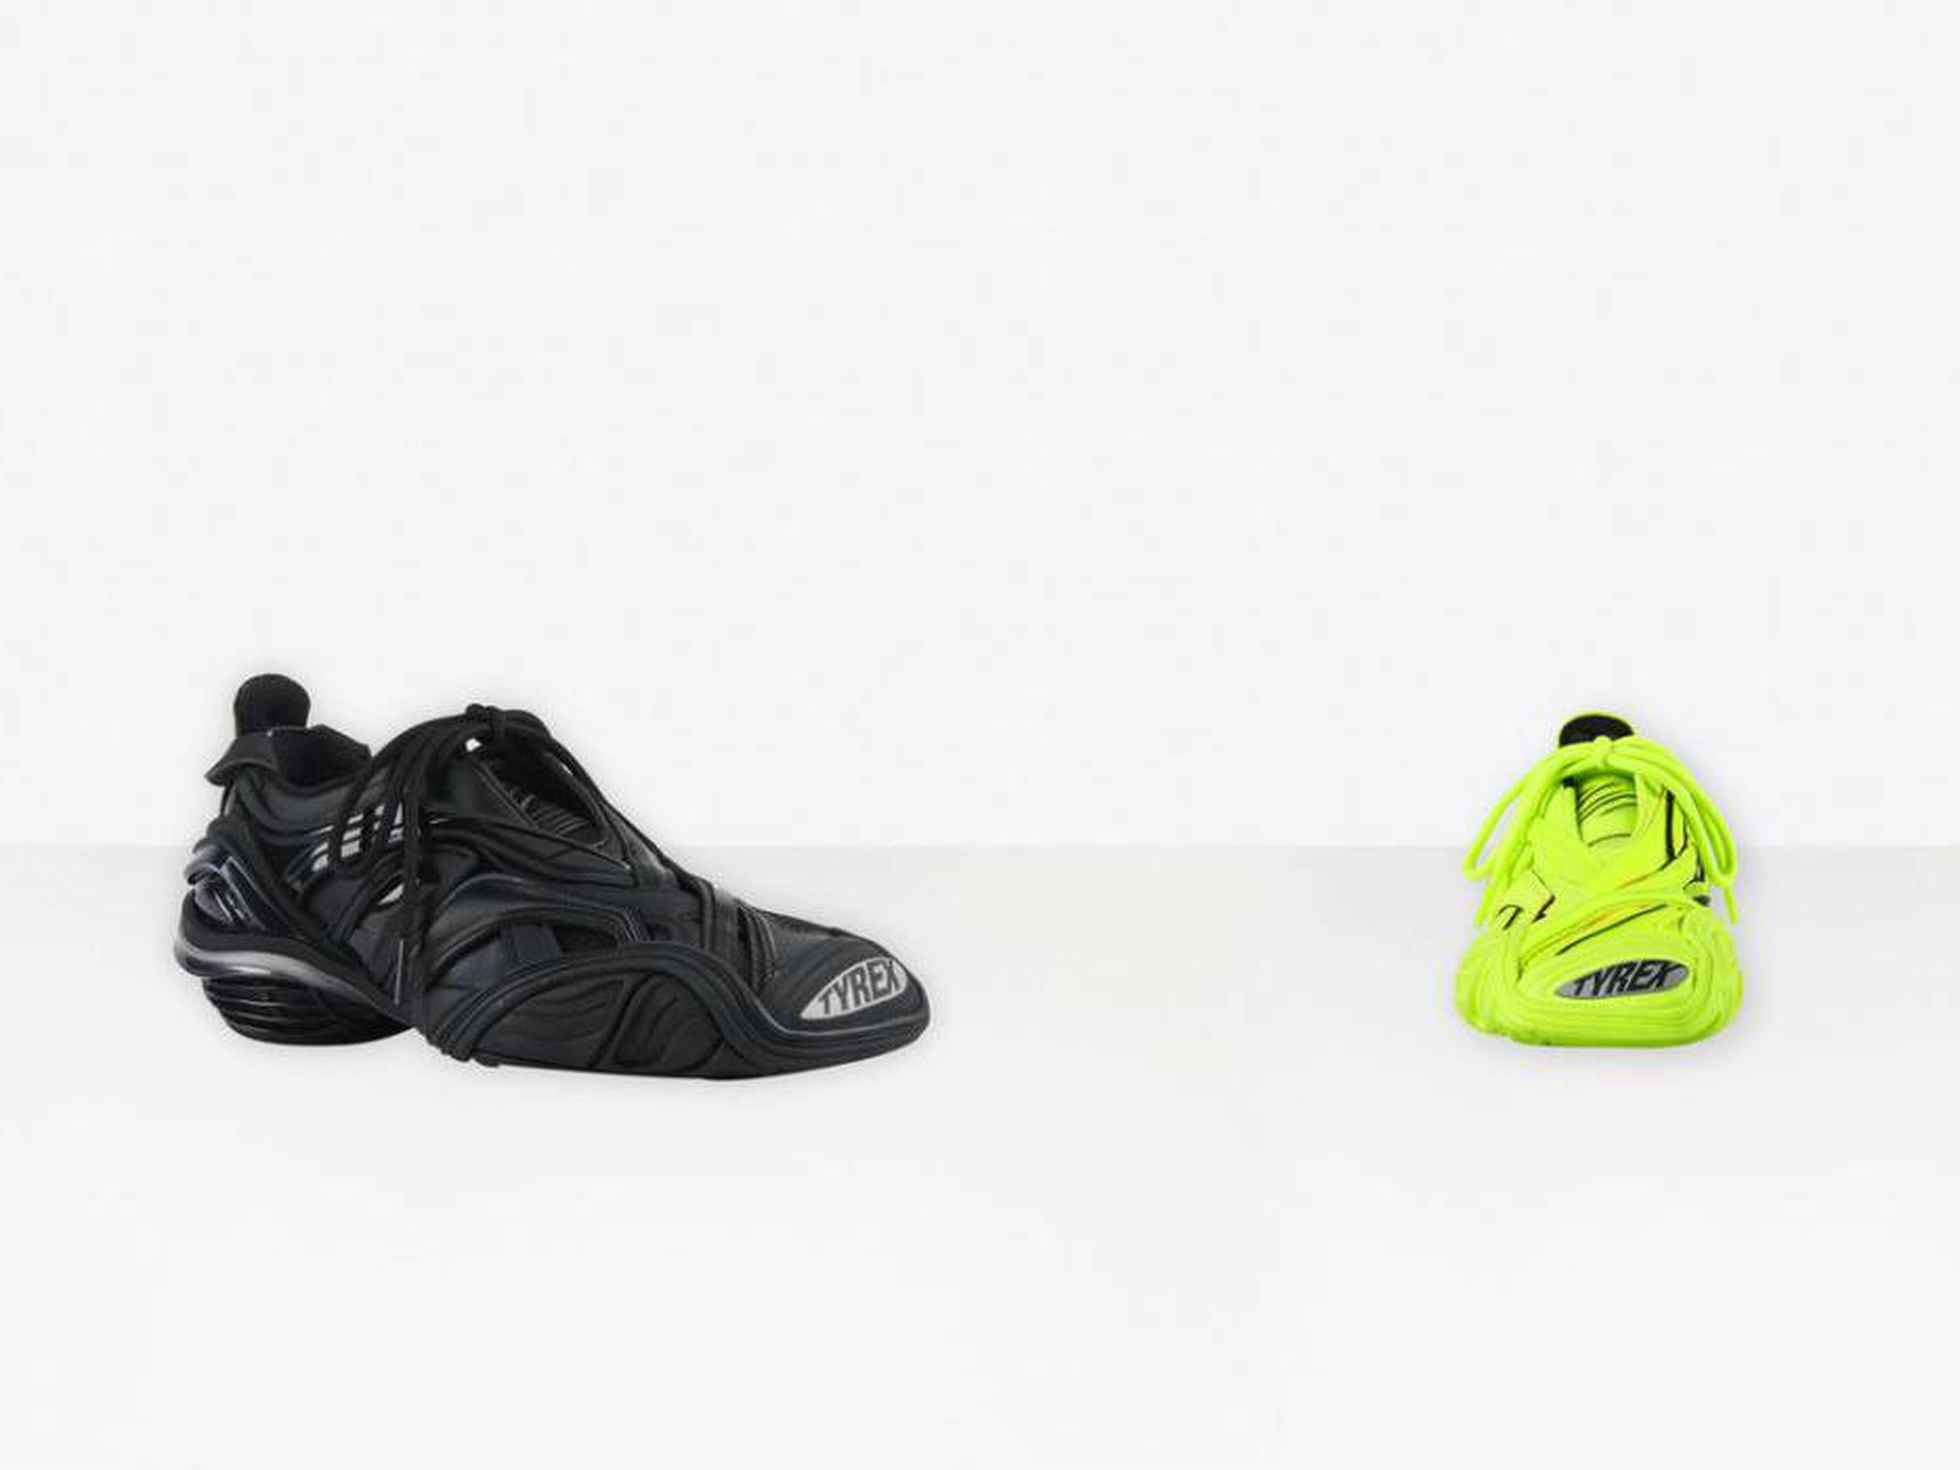 Tyrex: Las nuevas Balenciaga, ¿unas zapatillas del Decathlon o visión de Los expertos analizan significado | ICON Design | EL